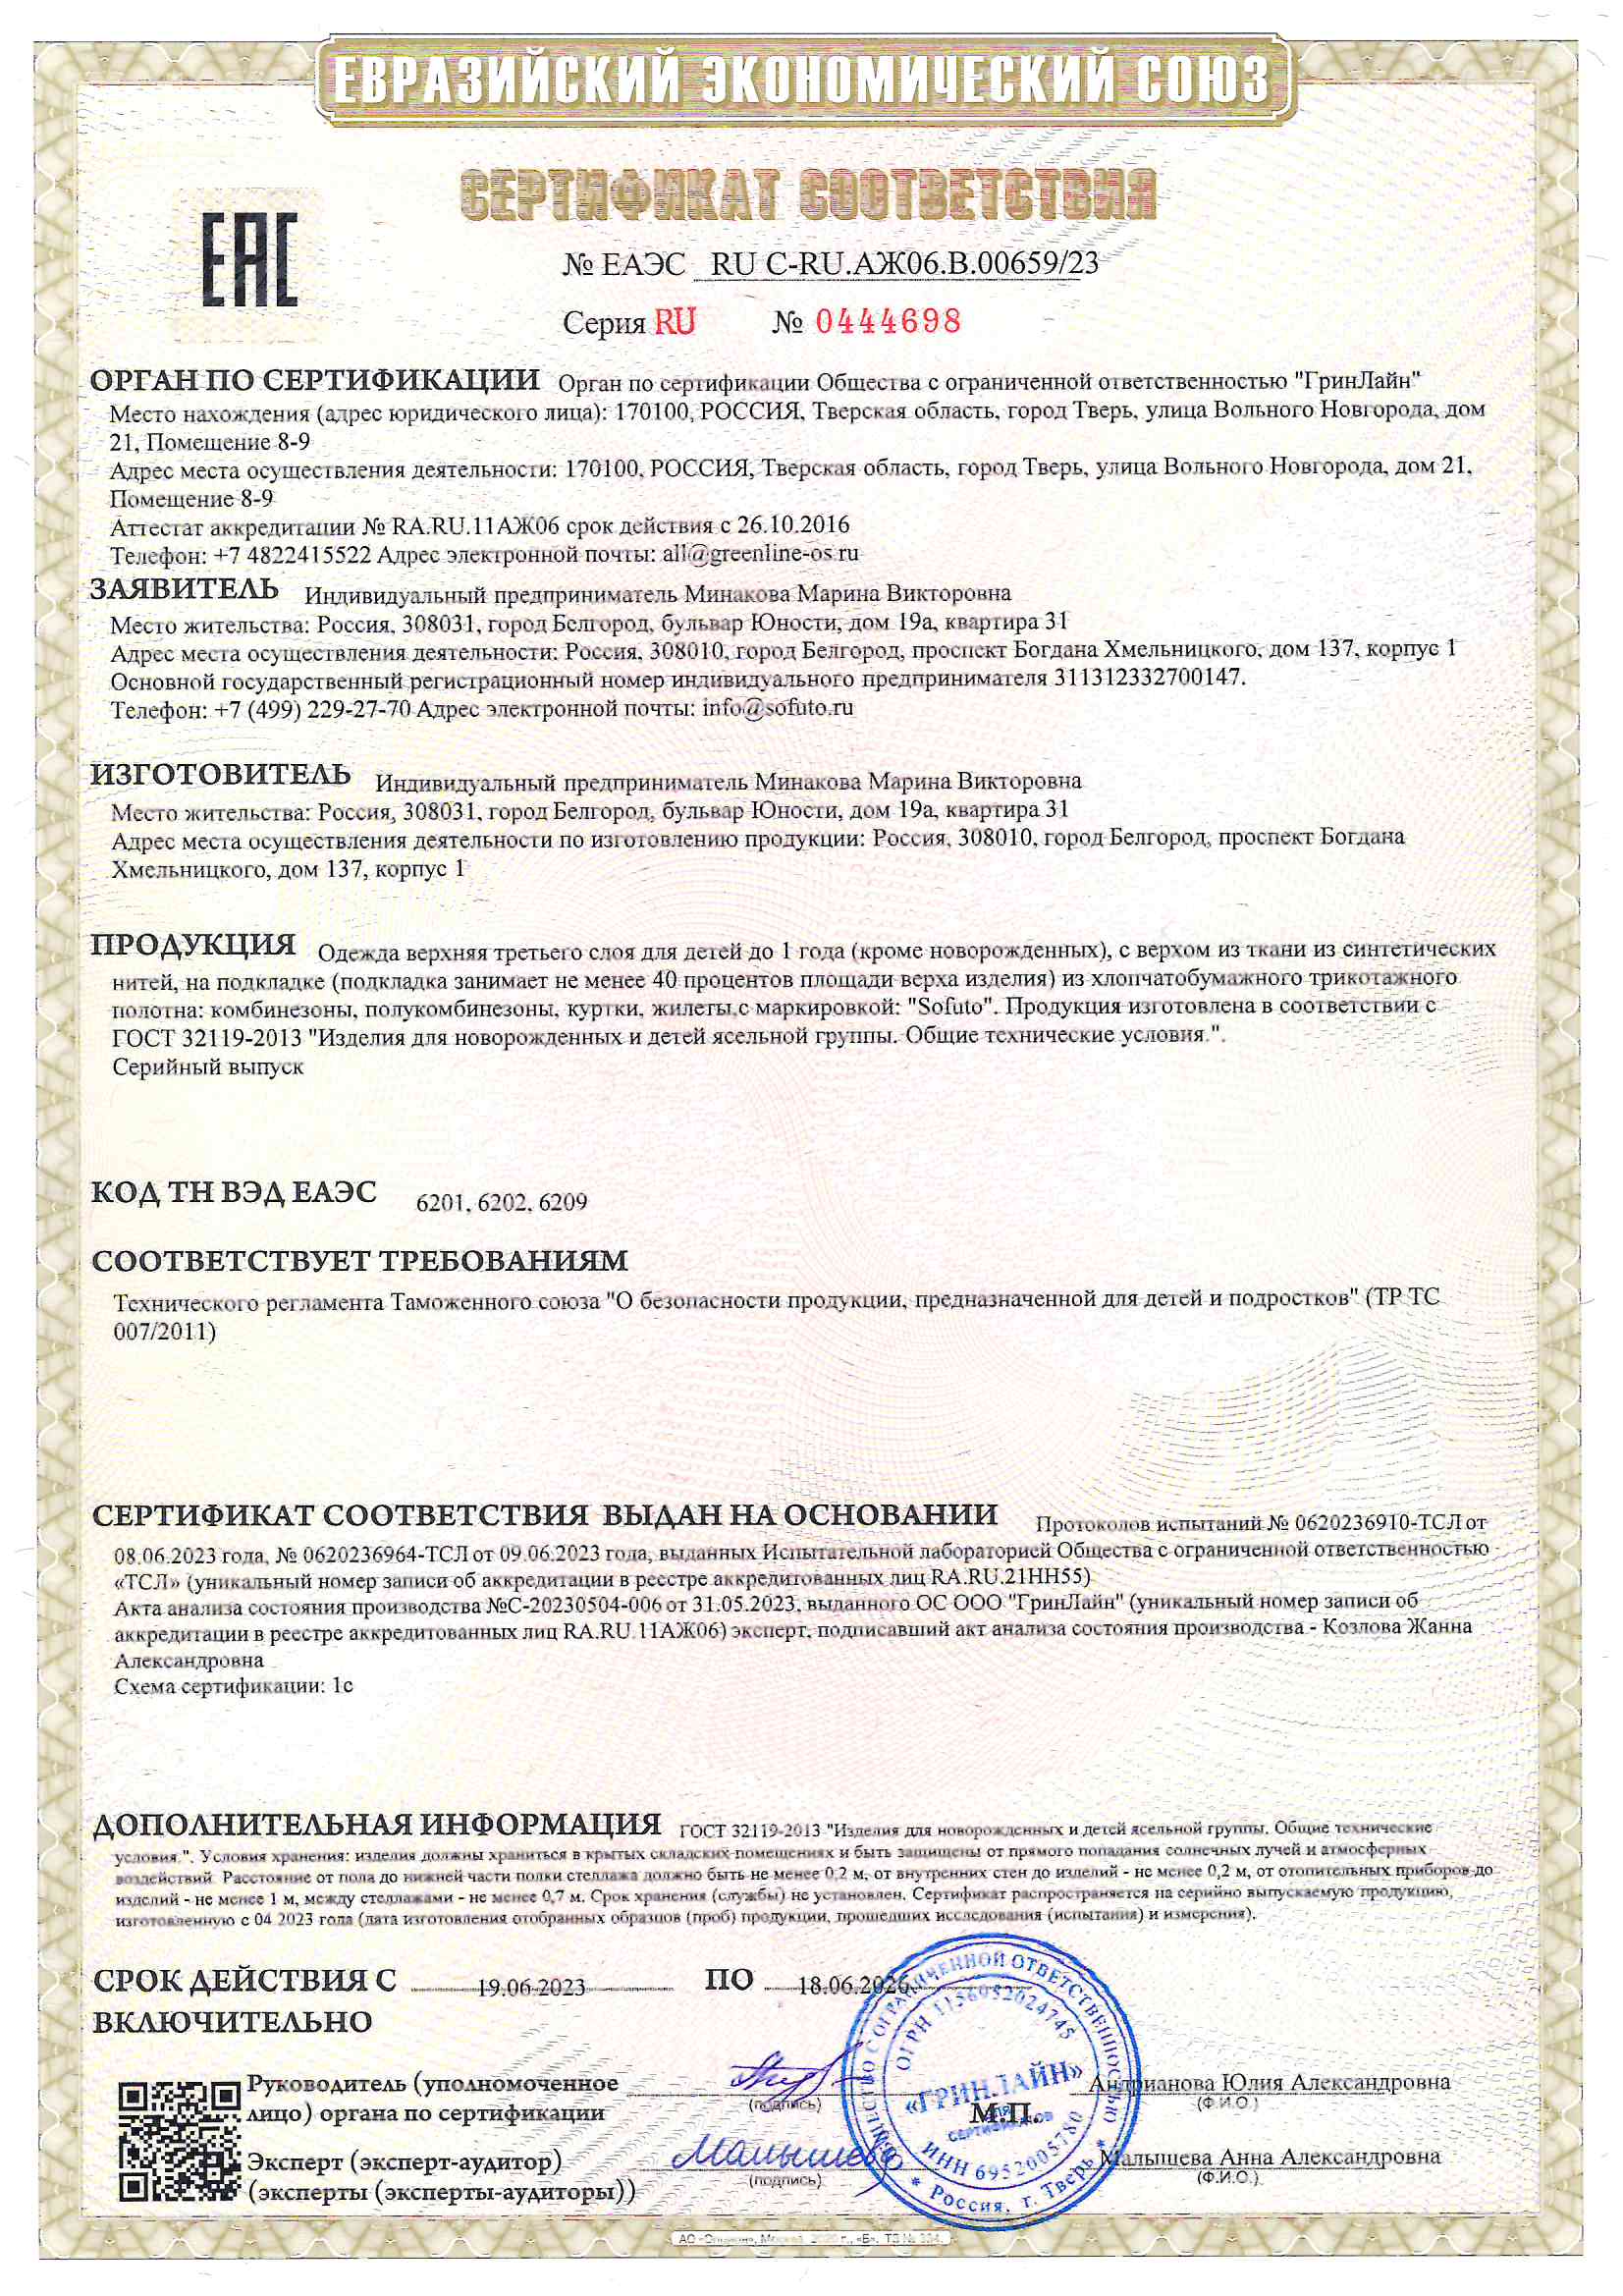 Сертификат соответствия ТС ТР 007/2011 на верхнюю одежду ТМ Sofuto для детей до 1 года